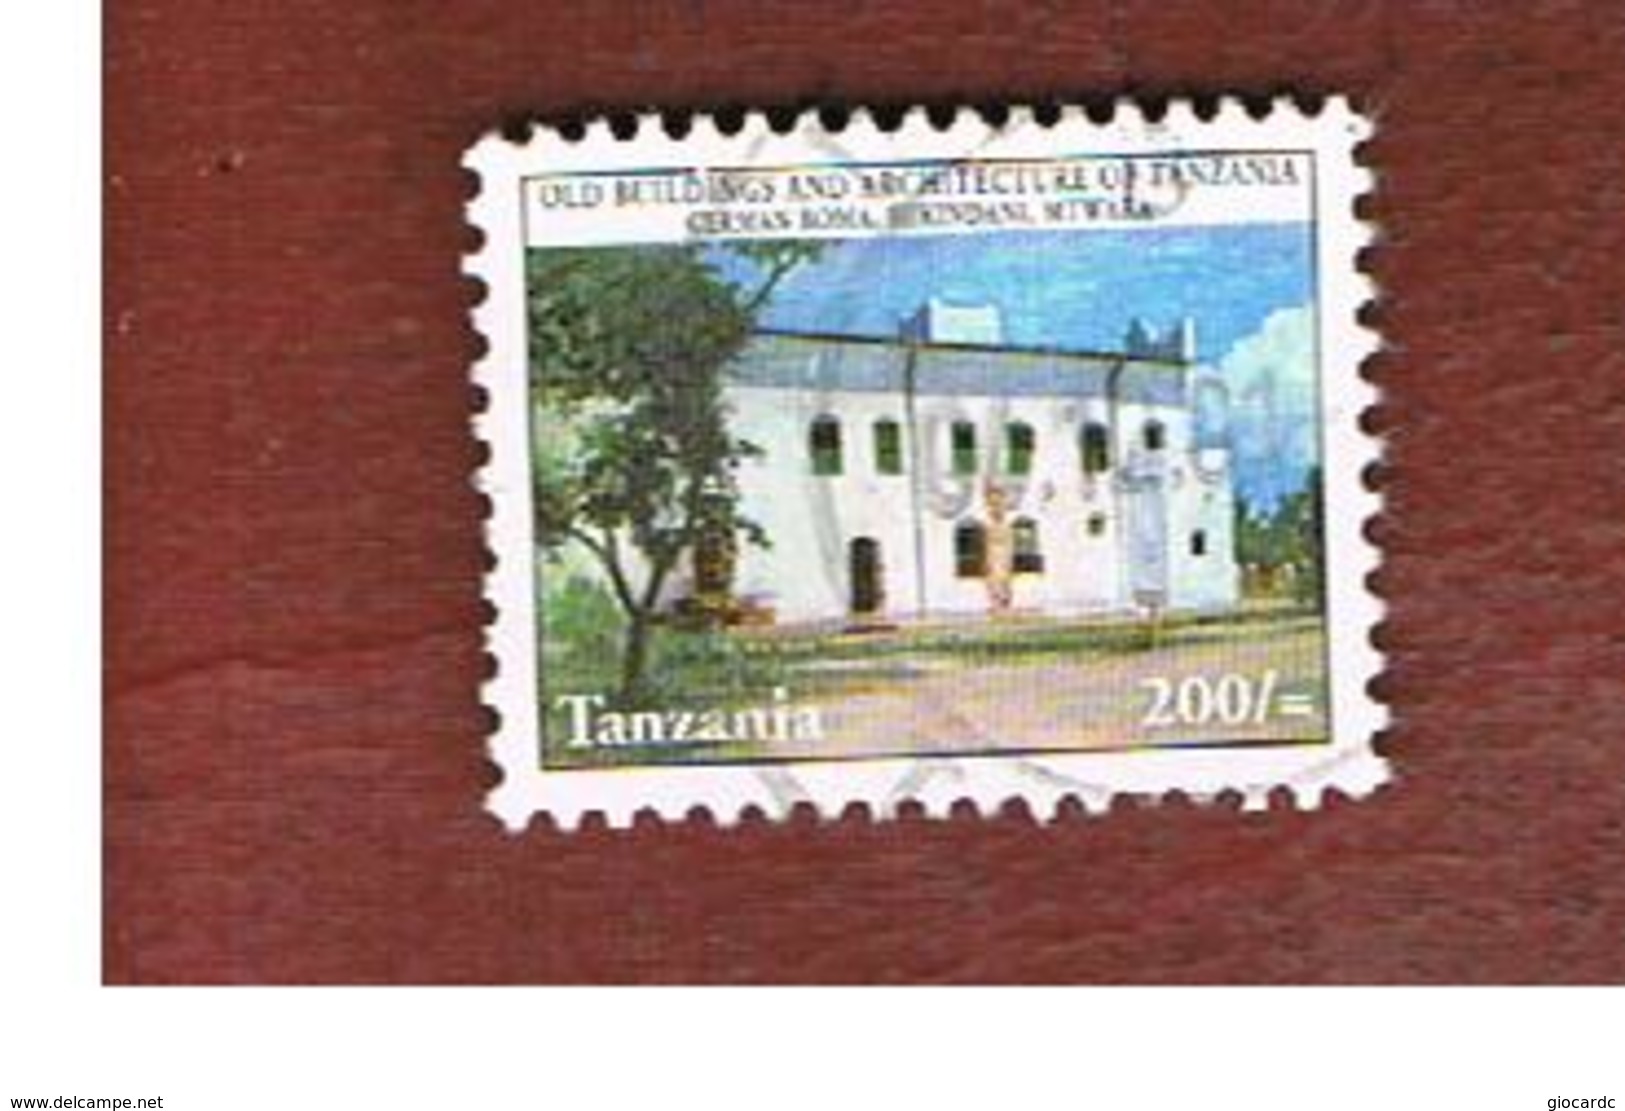 TANZANIA  -  MI  4000  -    2000  GERMAN BOMA, MIKINDANI    - USED ° - Tanzania (1964-...)